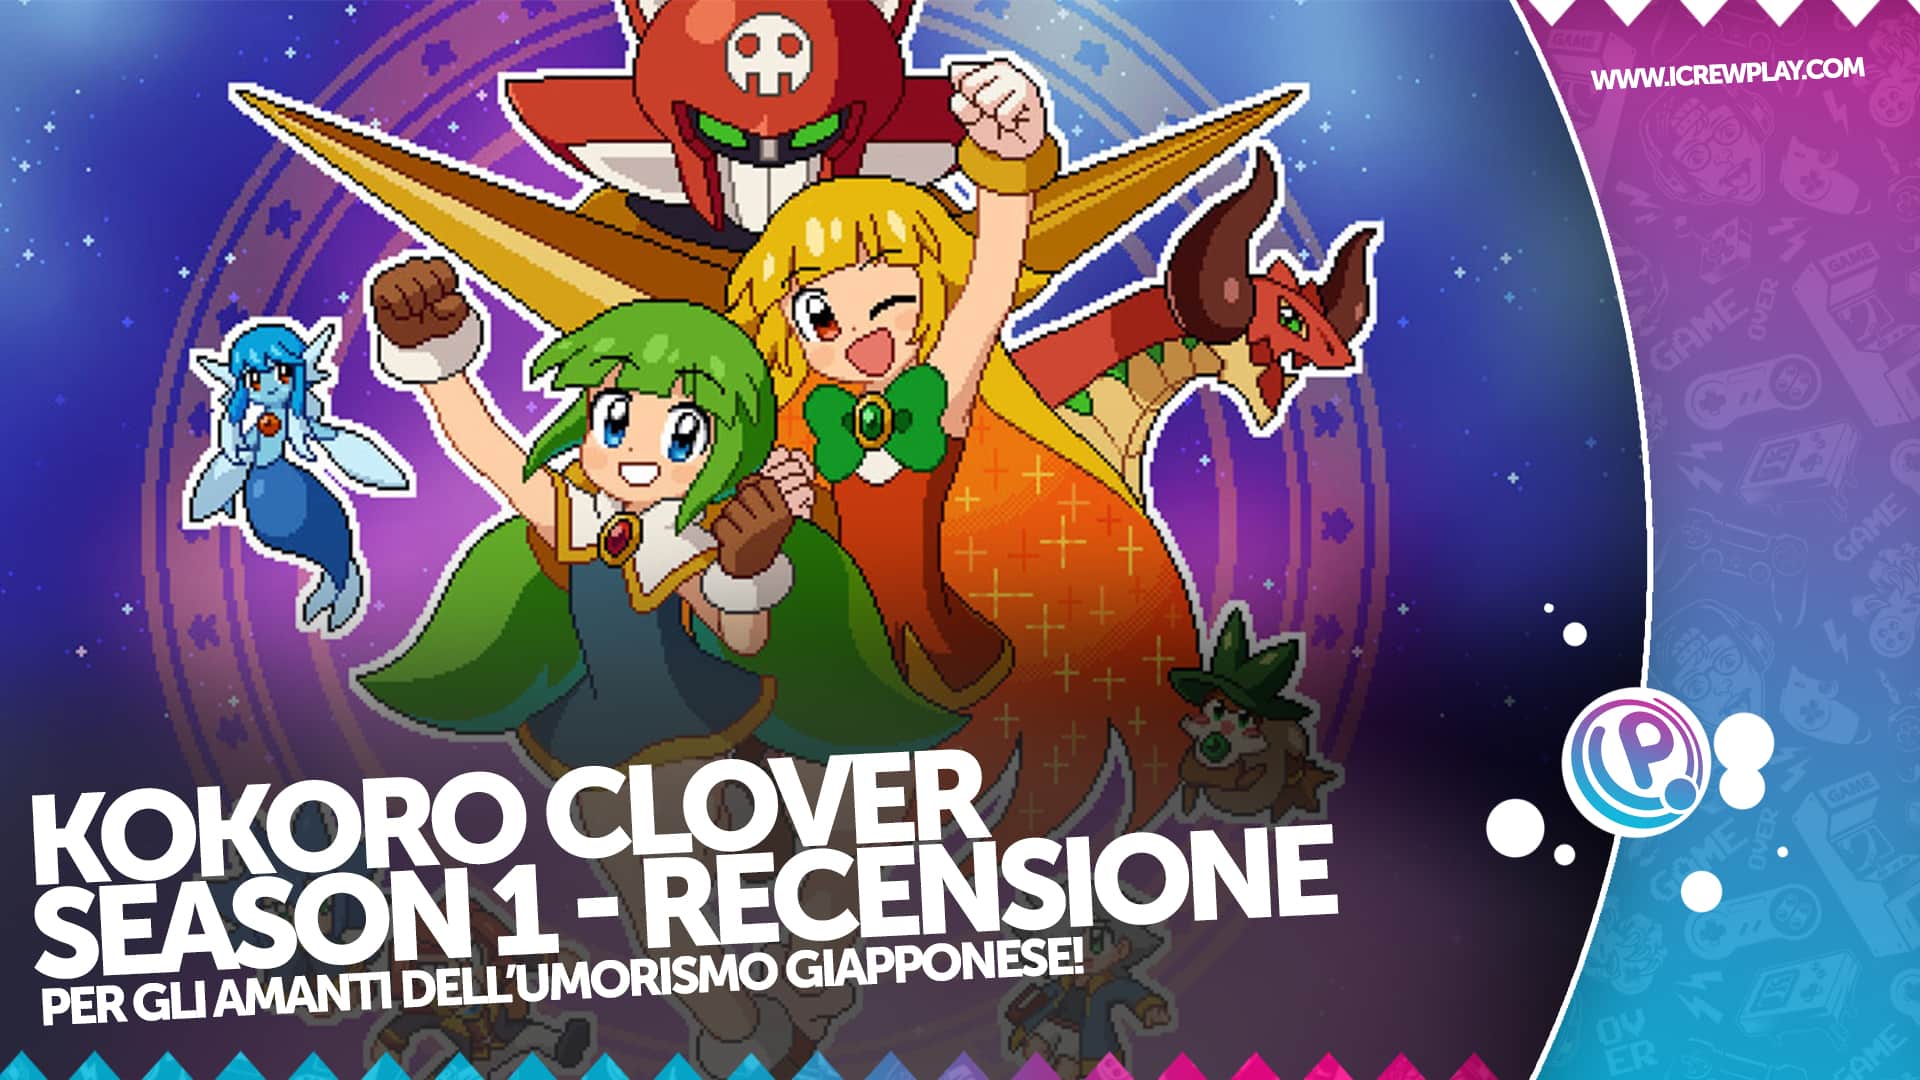 Kokoro Clover Season 1 - Recensione per Nintendo Switch 6